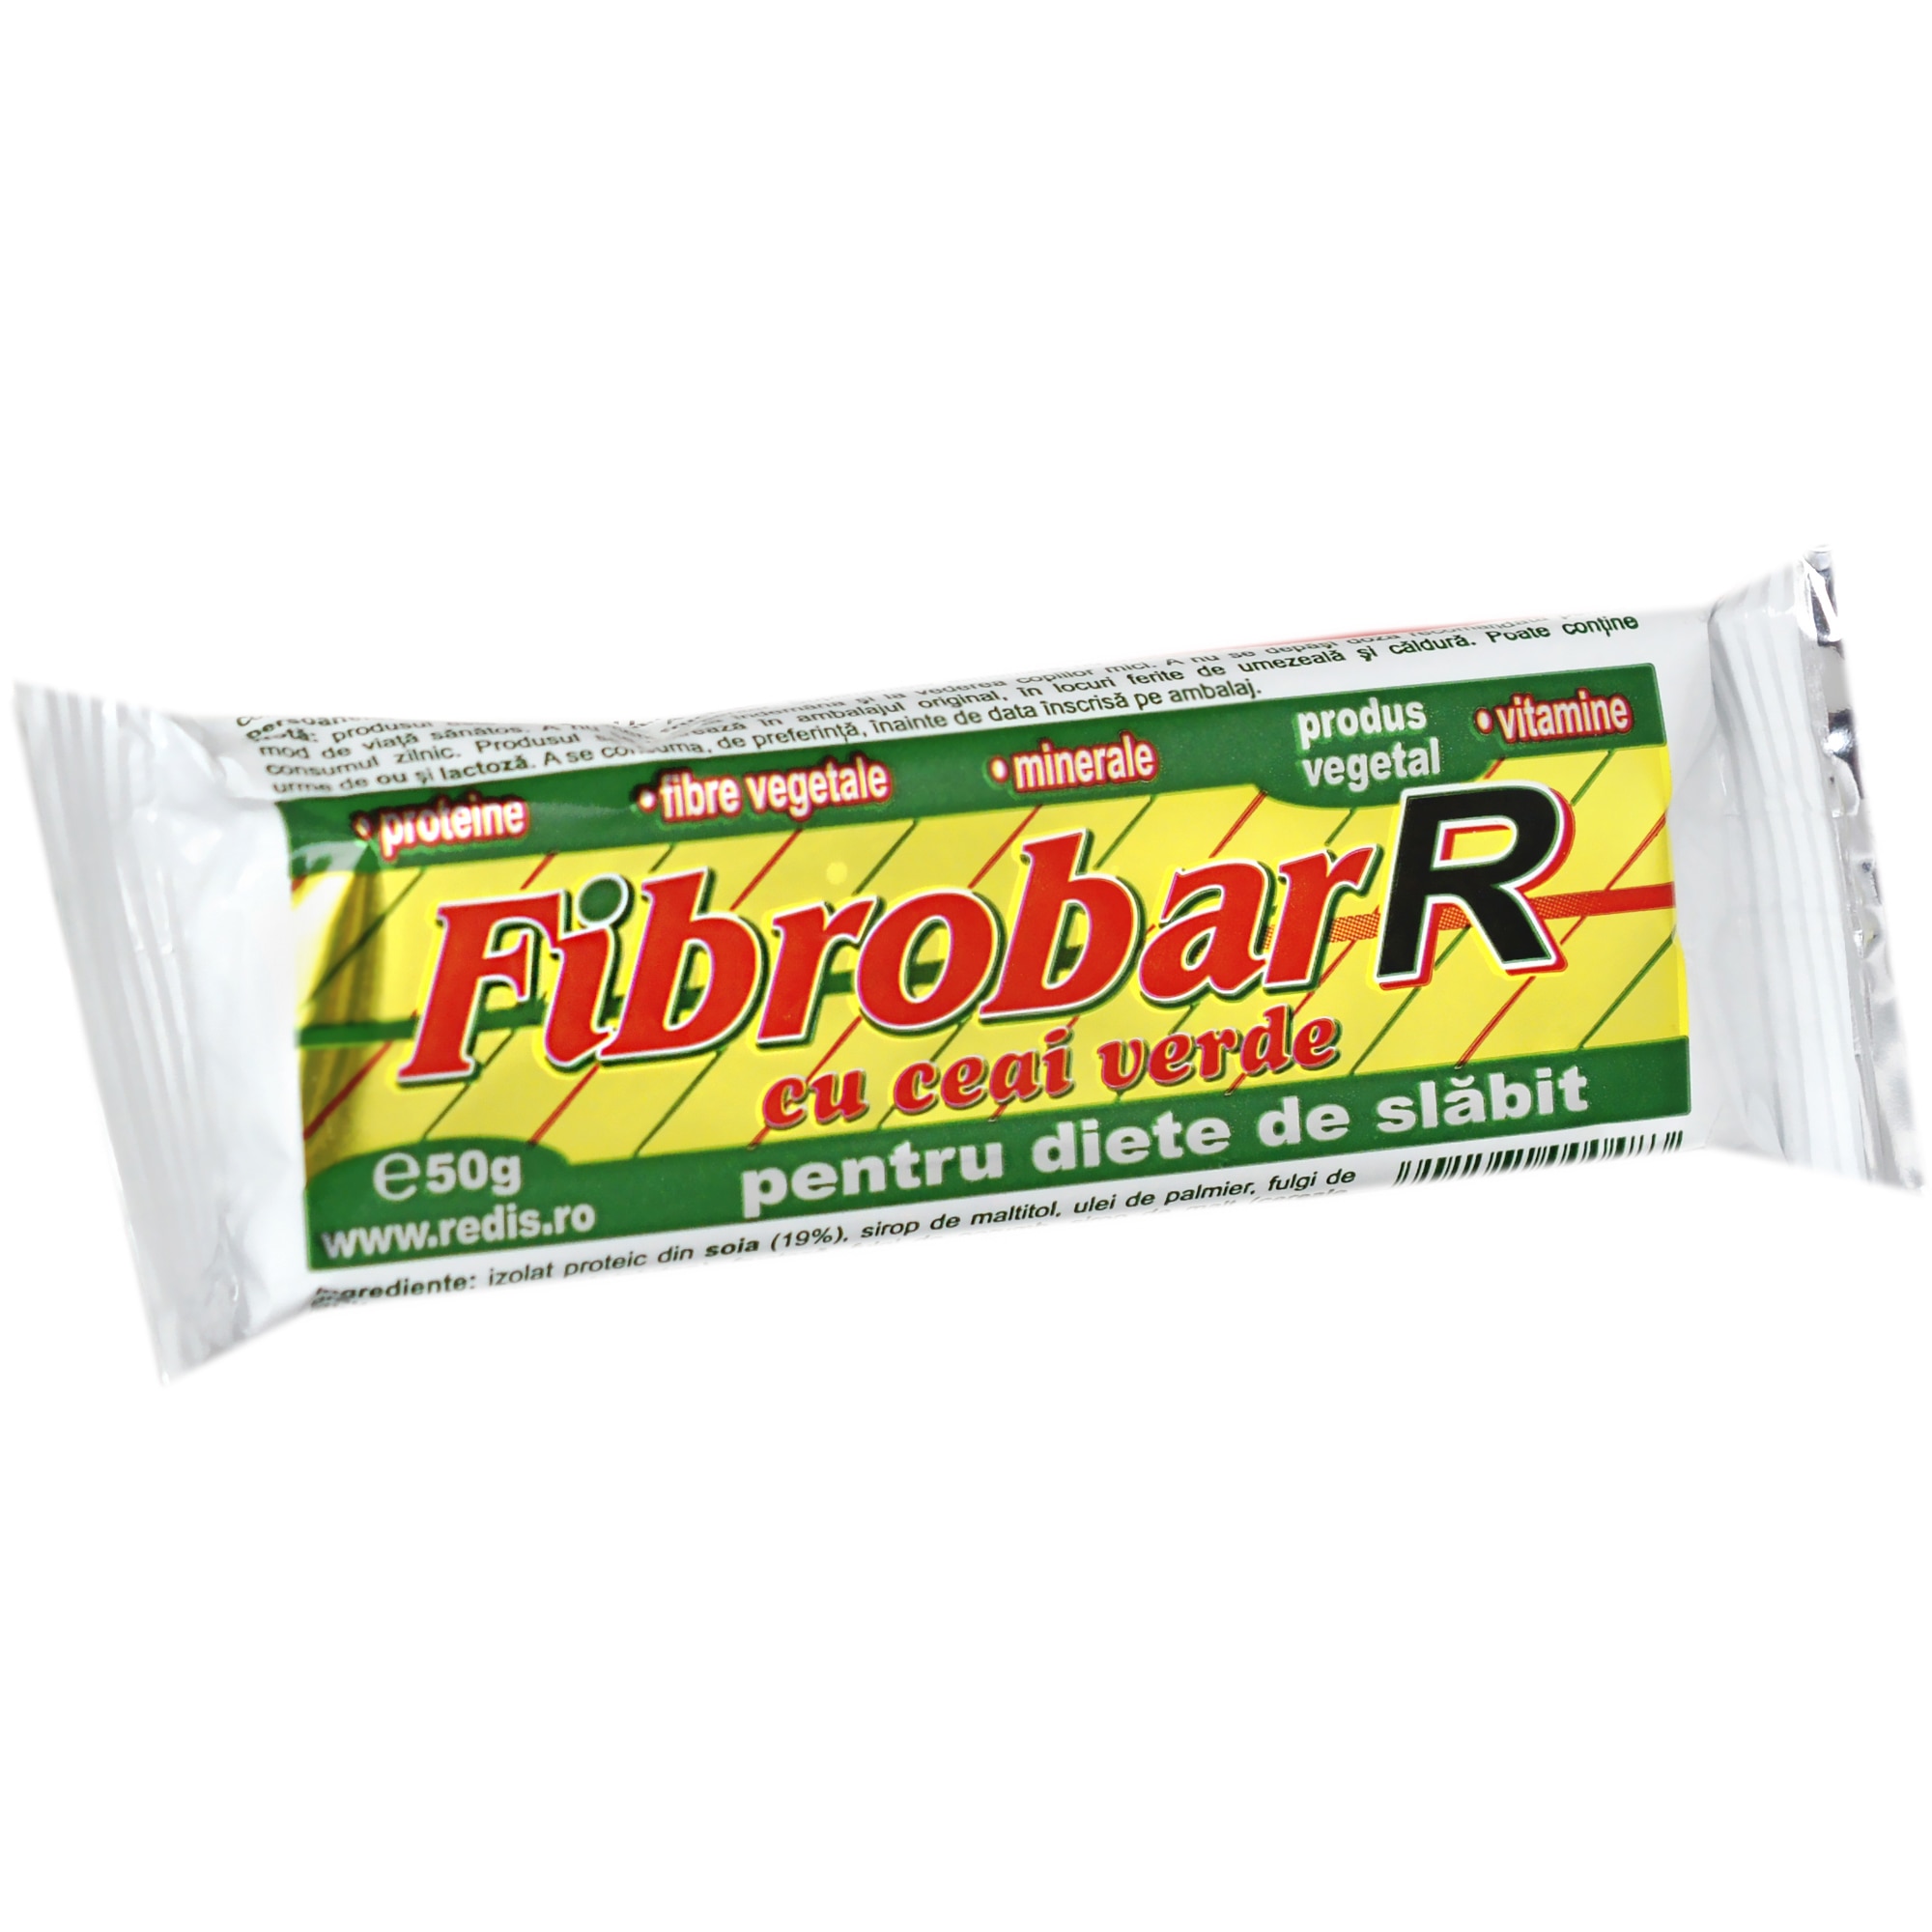 Am testat Fibrobar-R timp de 30 de zile